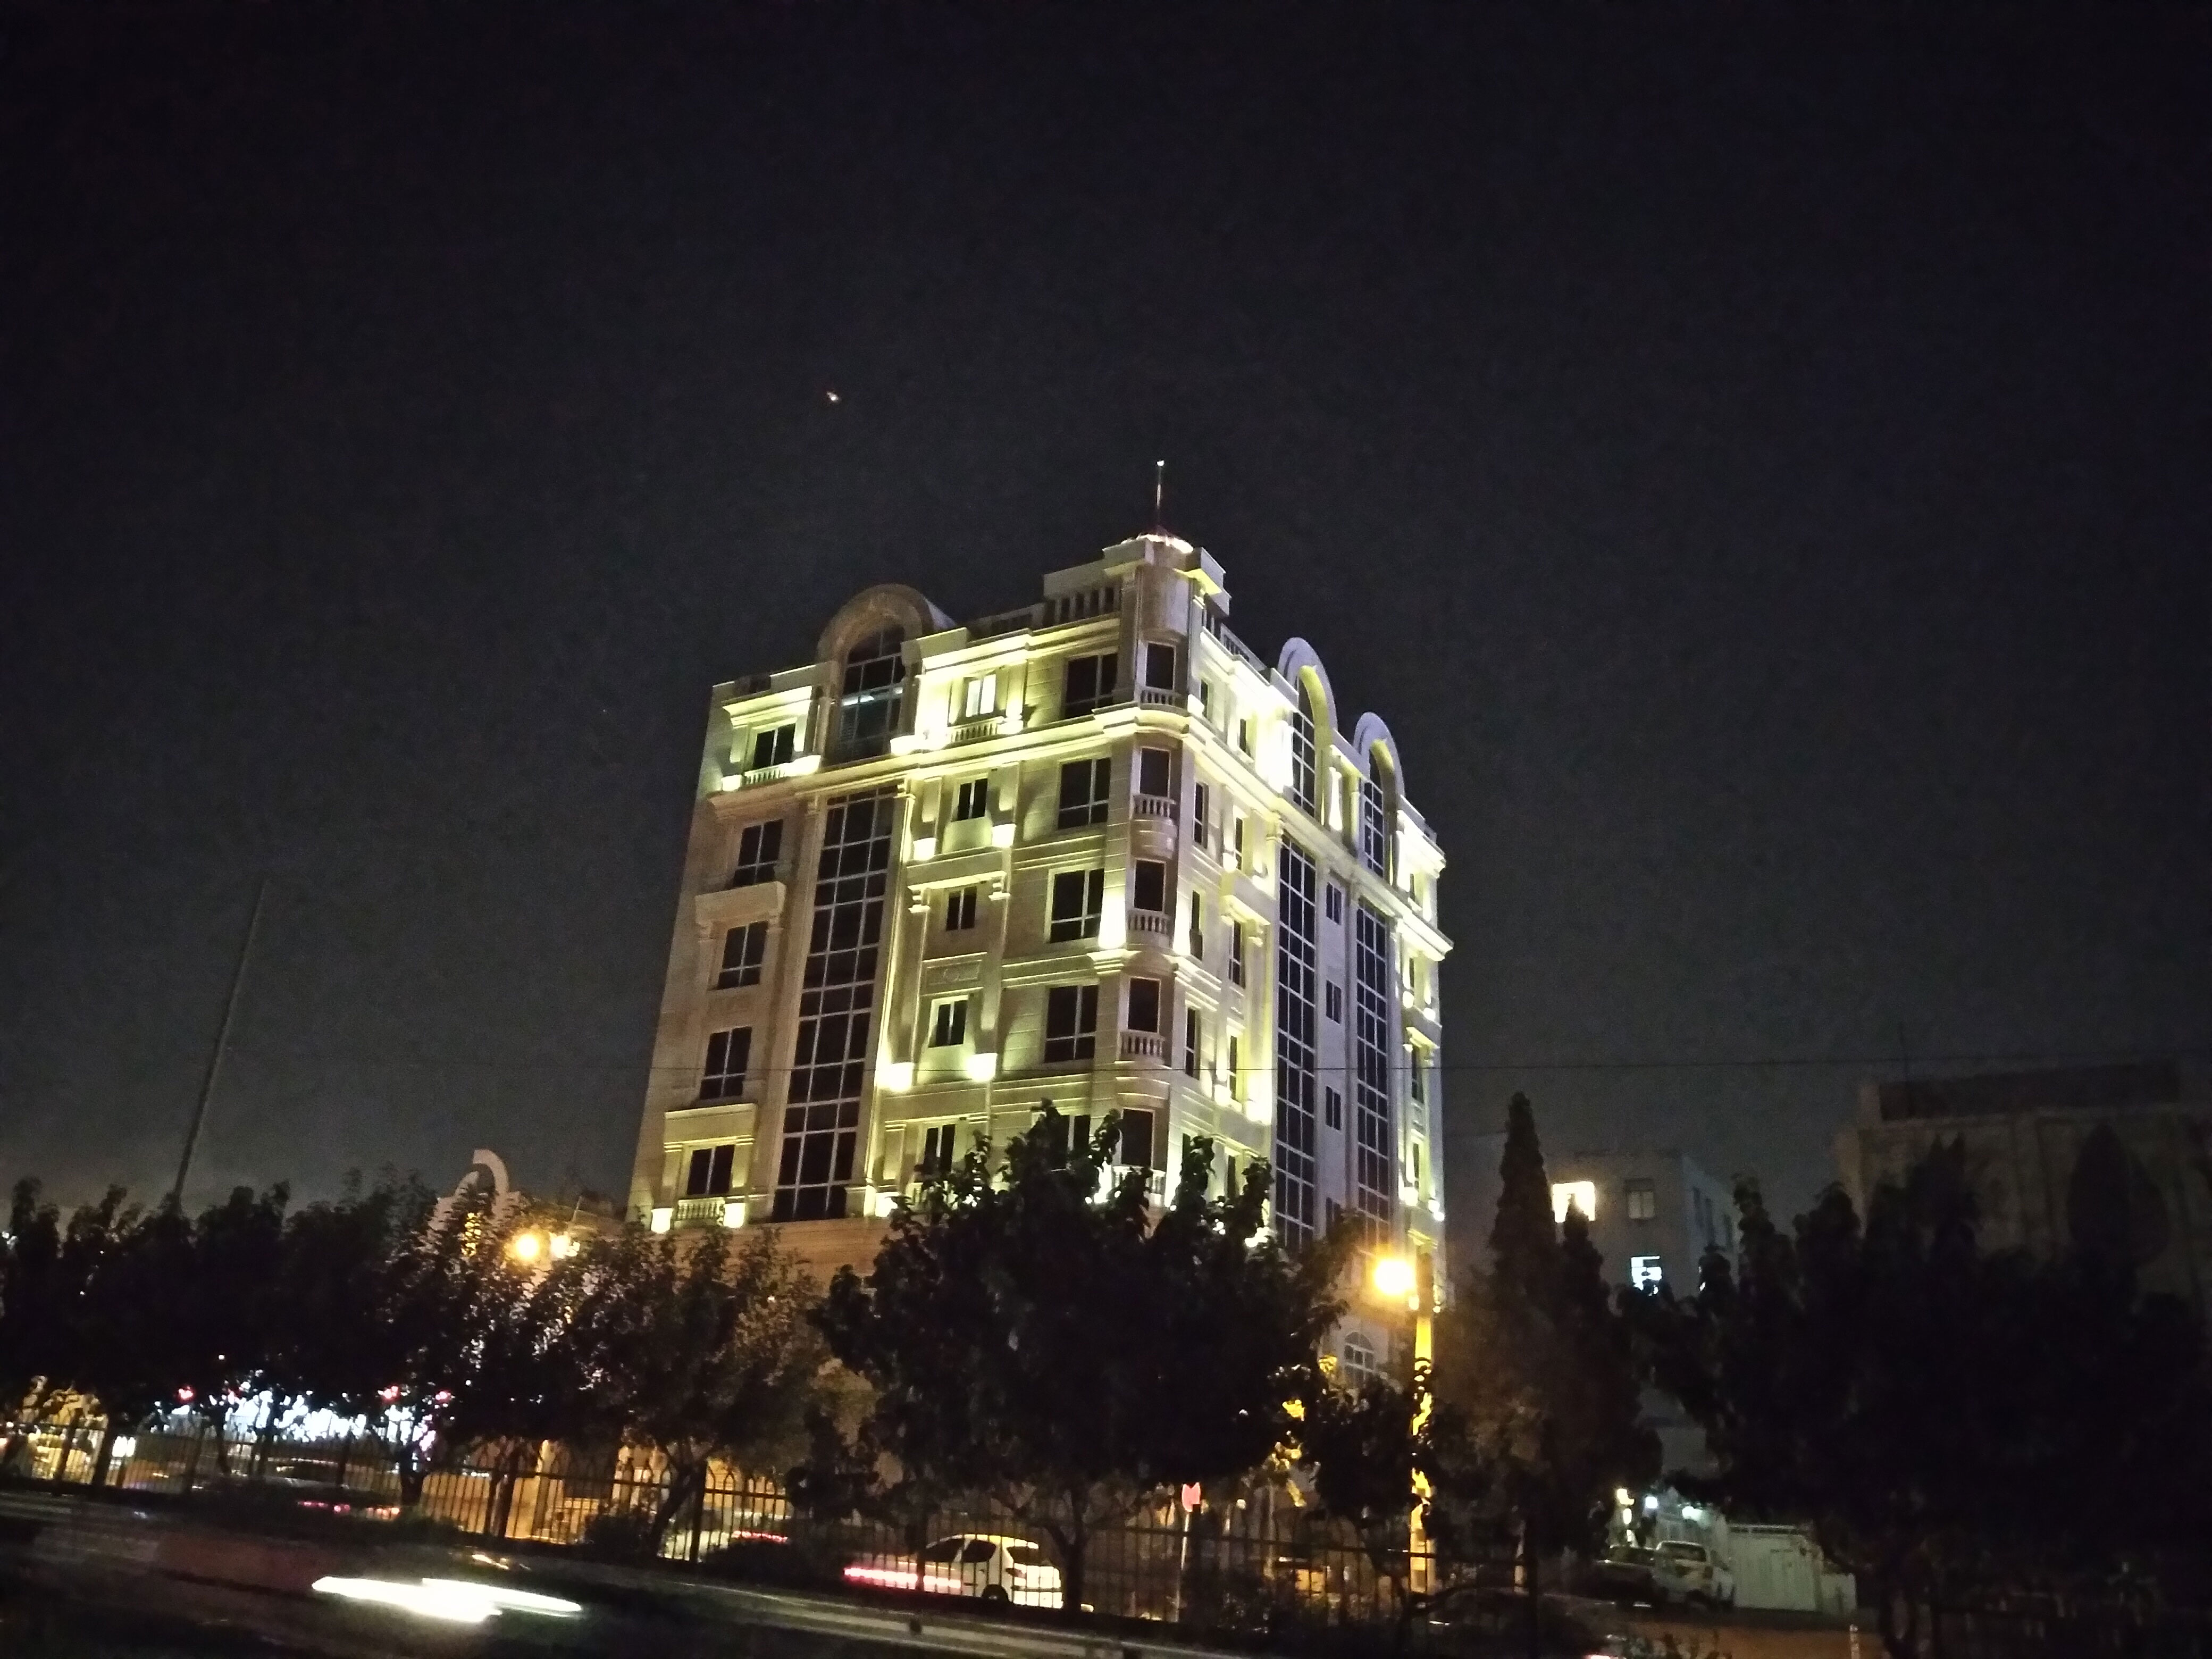 نمونه تصویر دوربین اصلی گلکسی A11 - نمای برج نورانی در شب